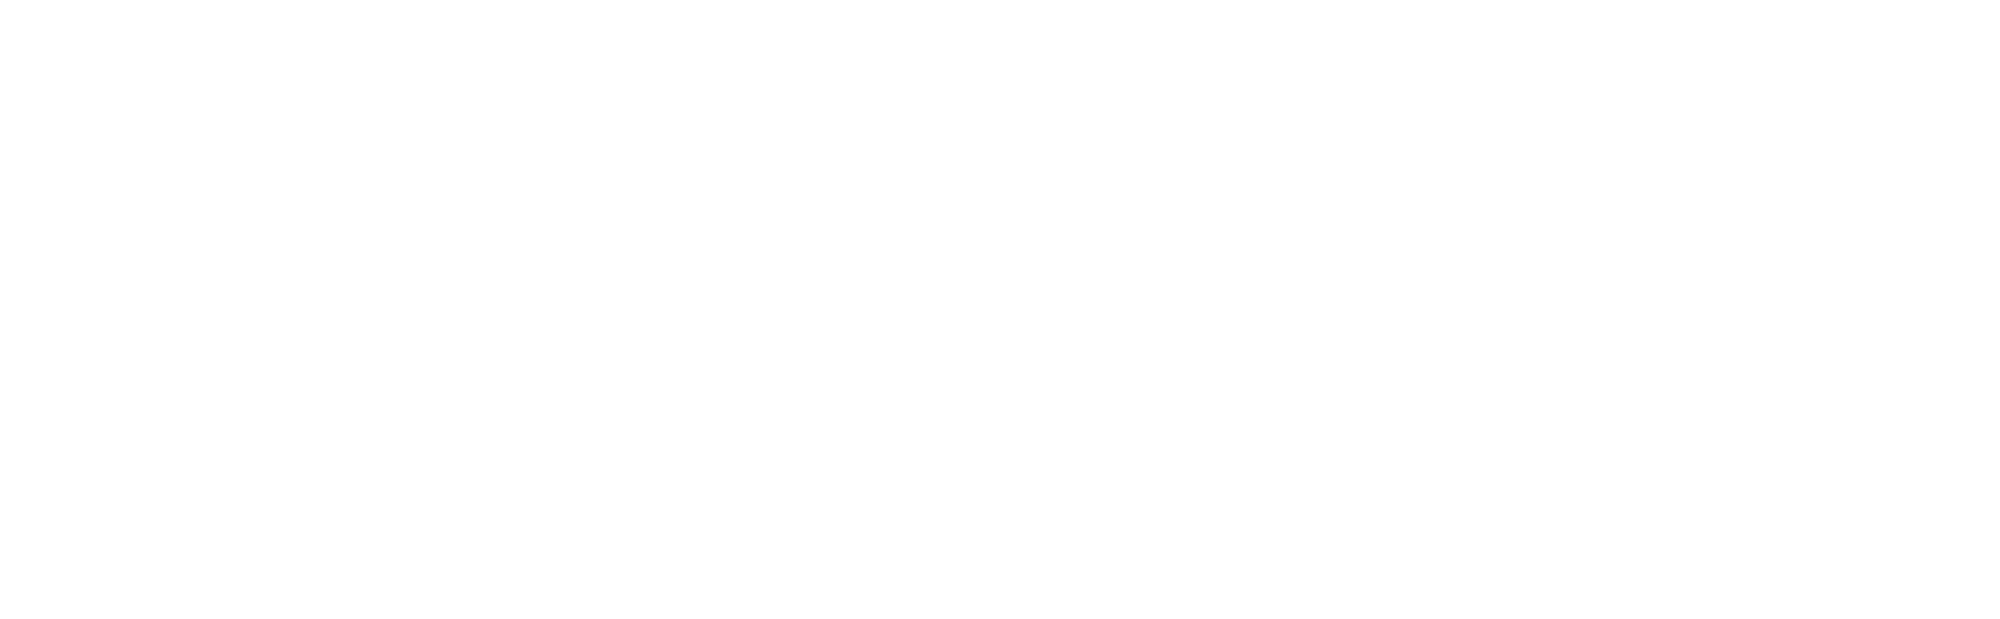 VATSIM Southeast Asia